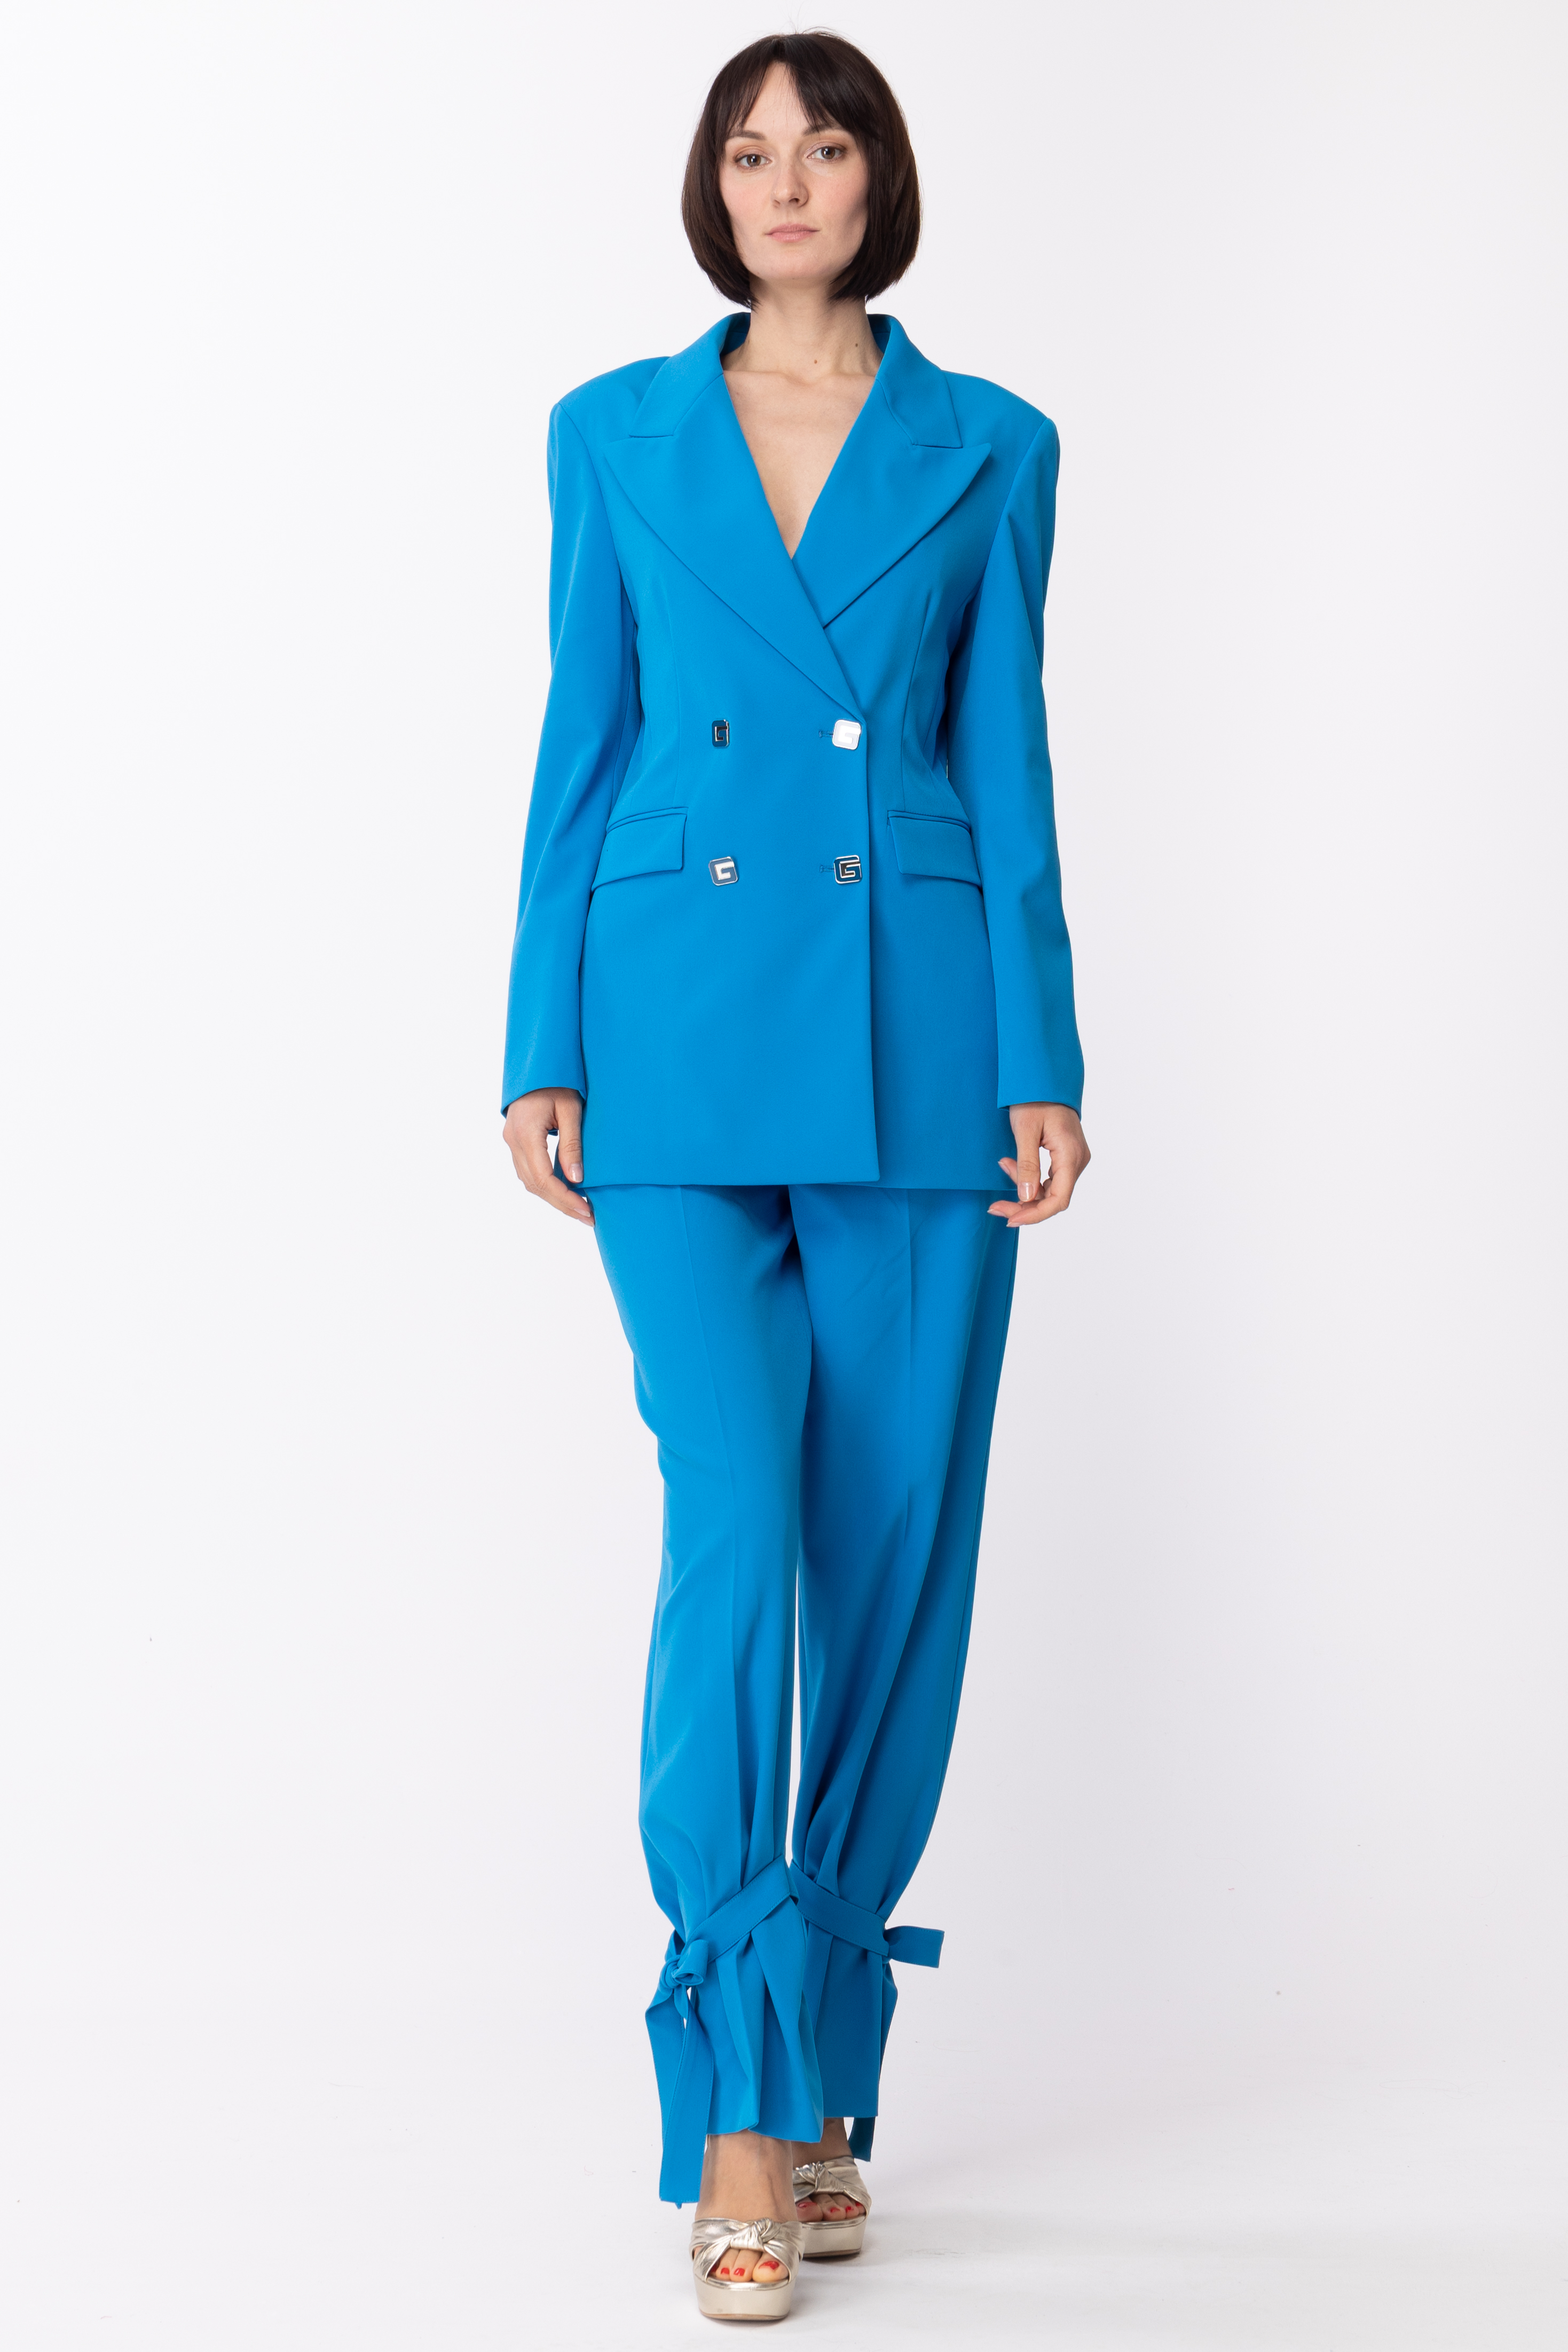 Podgląd: Gaelle Paris Spodnie ze ściągaczami na dole Blu Cobalto